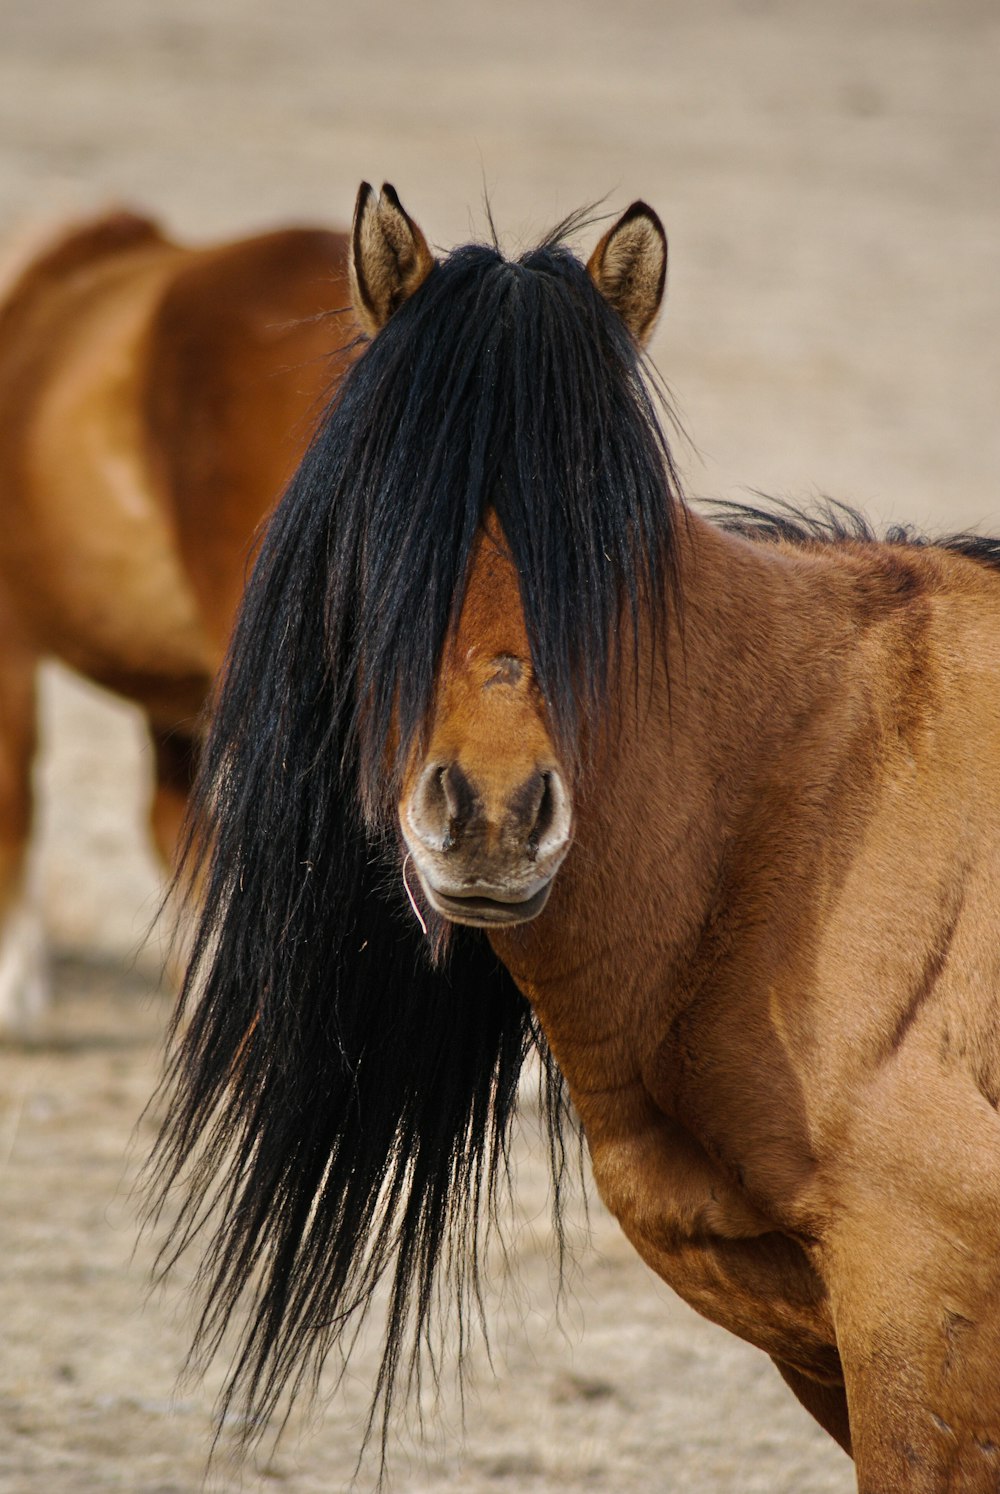 Un cavallo marrone con una criniera nera in piedi accanto a un altro cavallo  foto – Terelj Immagine gratuita su Unsplash